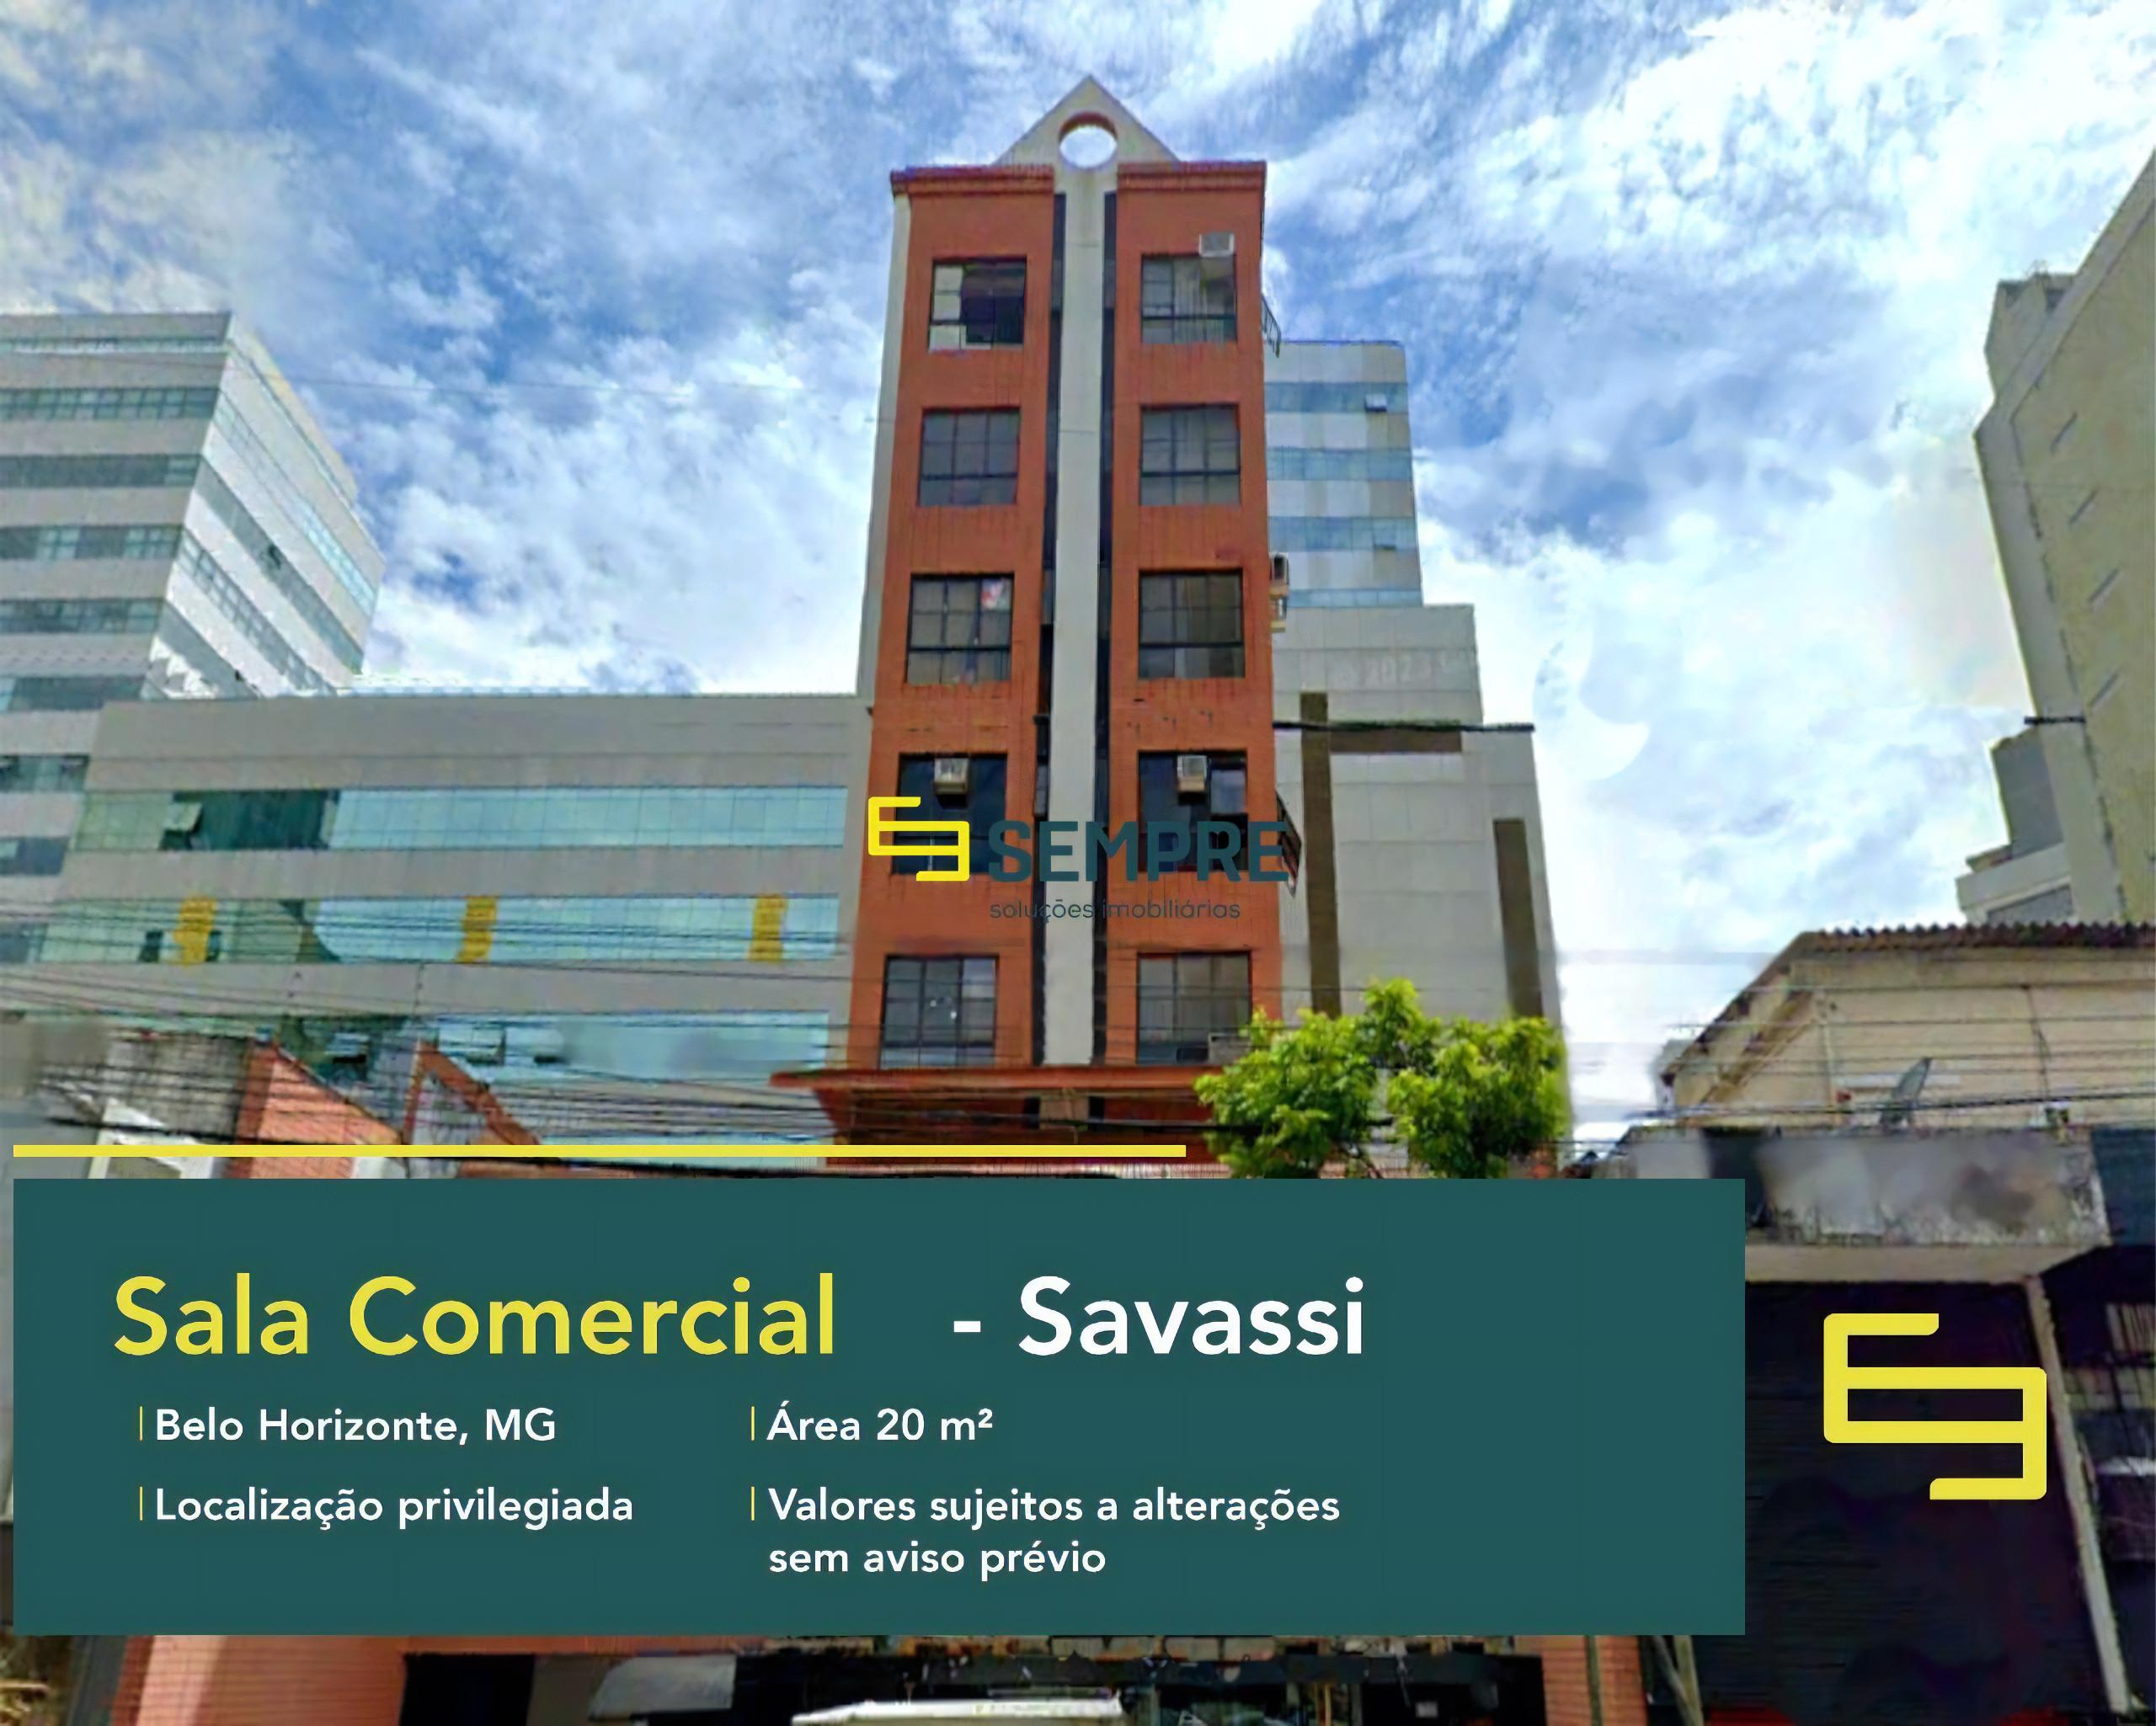 Sala comercial à venda na Savassi em Belo Horizonte, excelente localização. O estabelecimento comercial conta com área de 20 m².